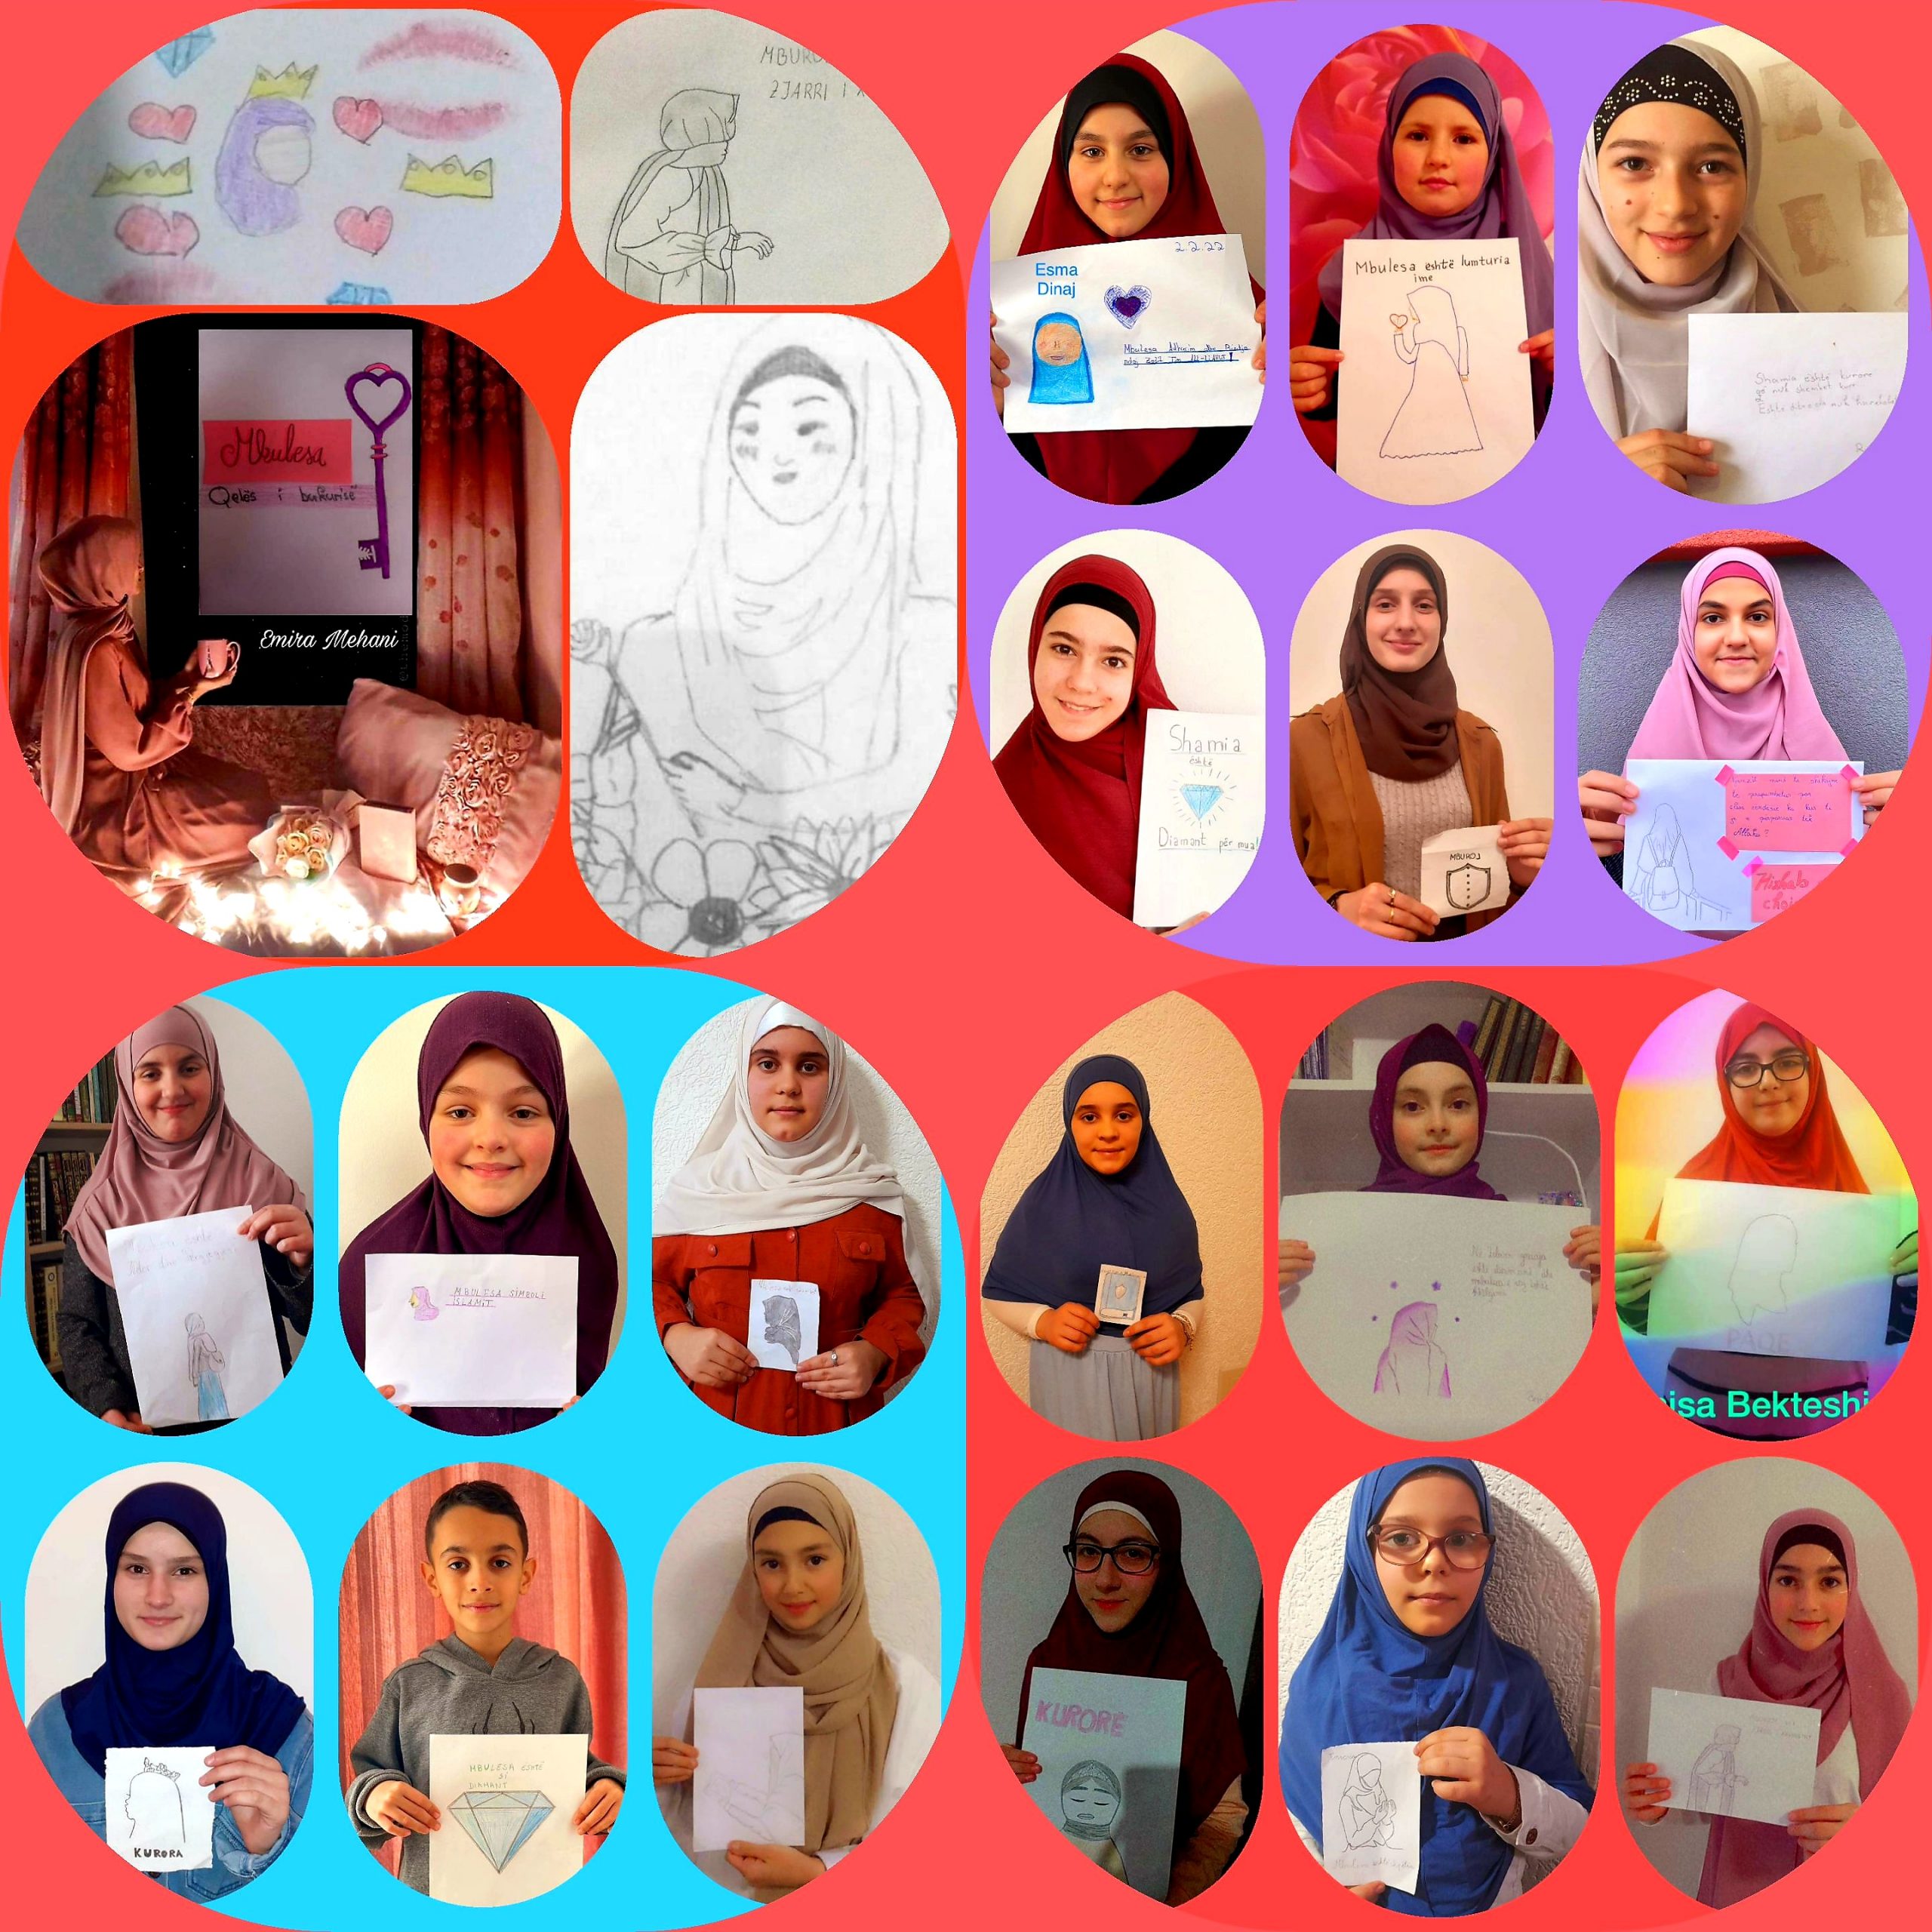 اختارت فتيات أكاديمية "الحفاظ الصغار" الرسم للتعبير عن رؤيتهم الخاصة للحجاب